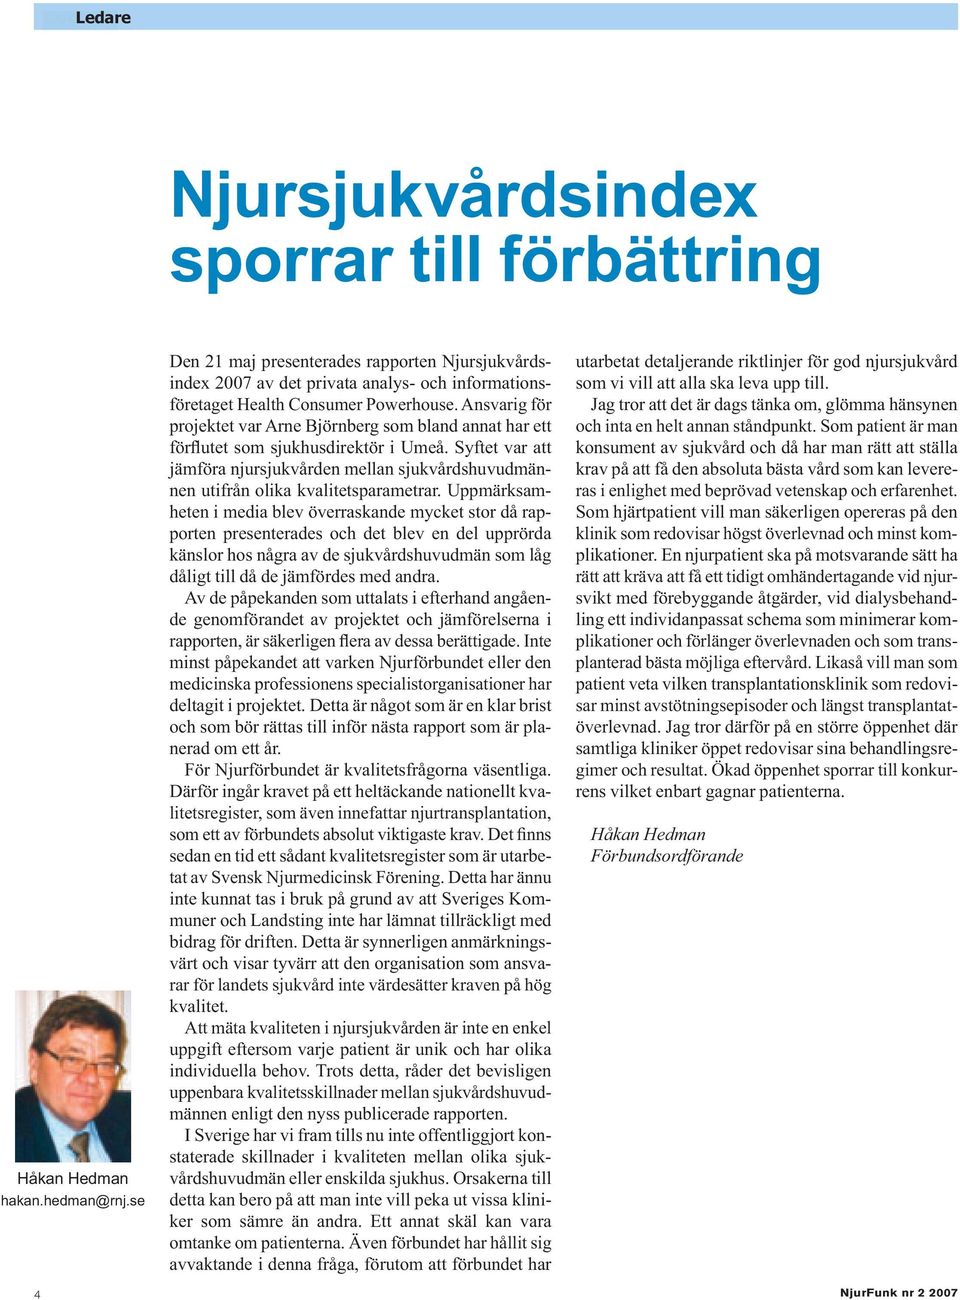 Ansvarig för projektet var Arne Björnberg som bland annat har ett förflutet som sjukhusdirektör i Umeå.